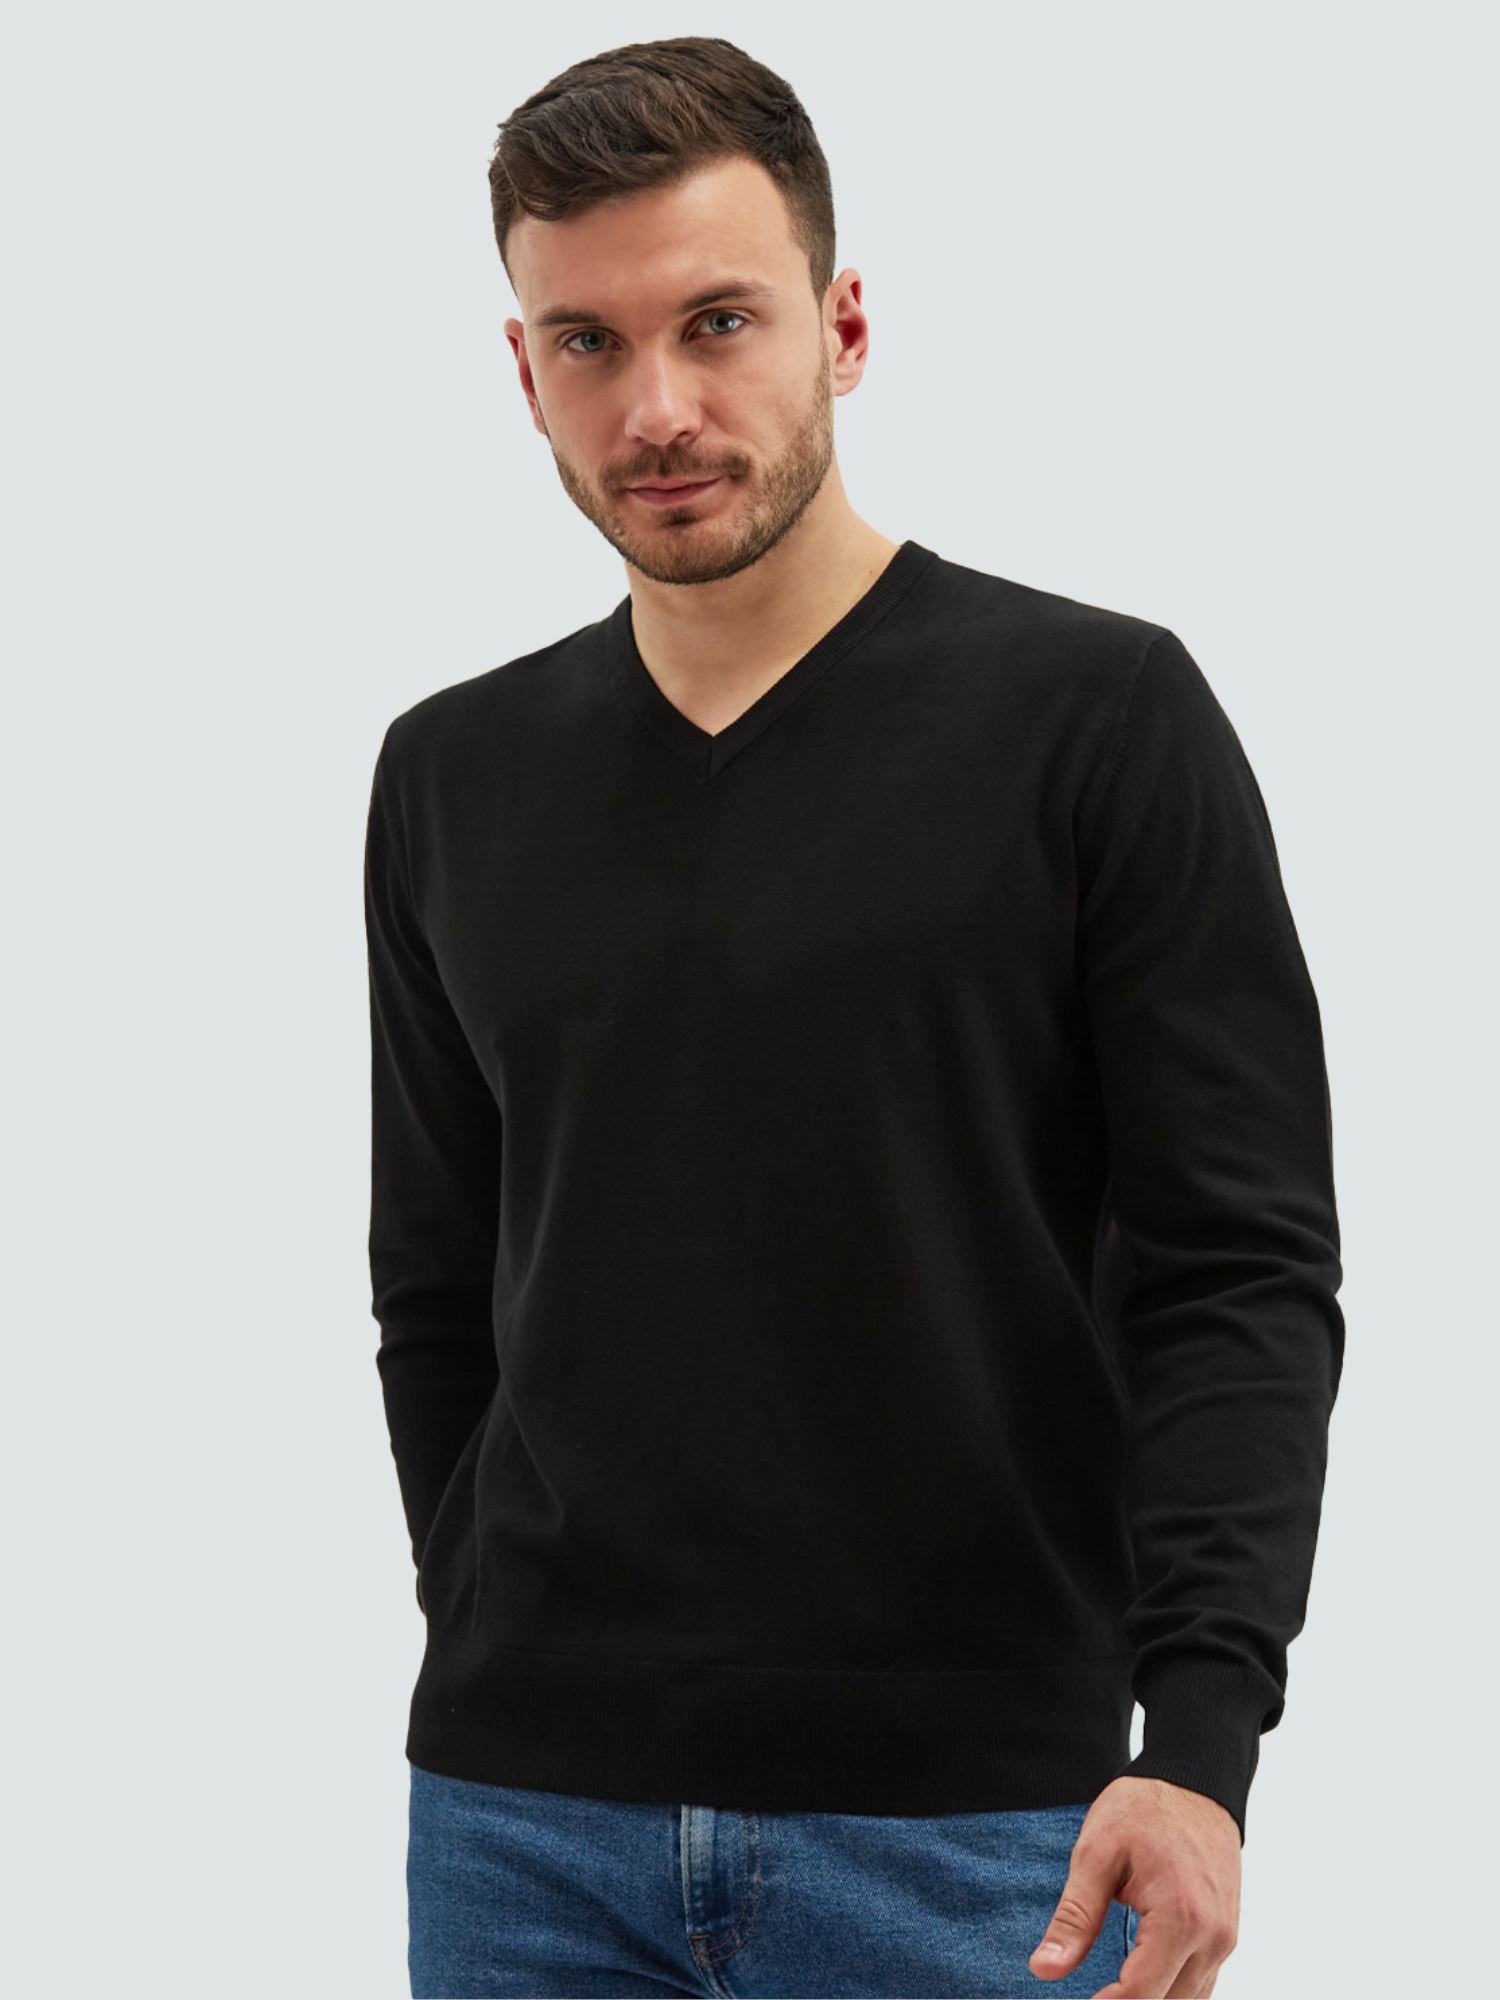 Пуловер мужской MANAFOFF 8106 черный M